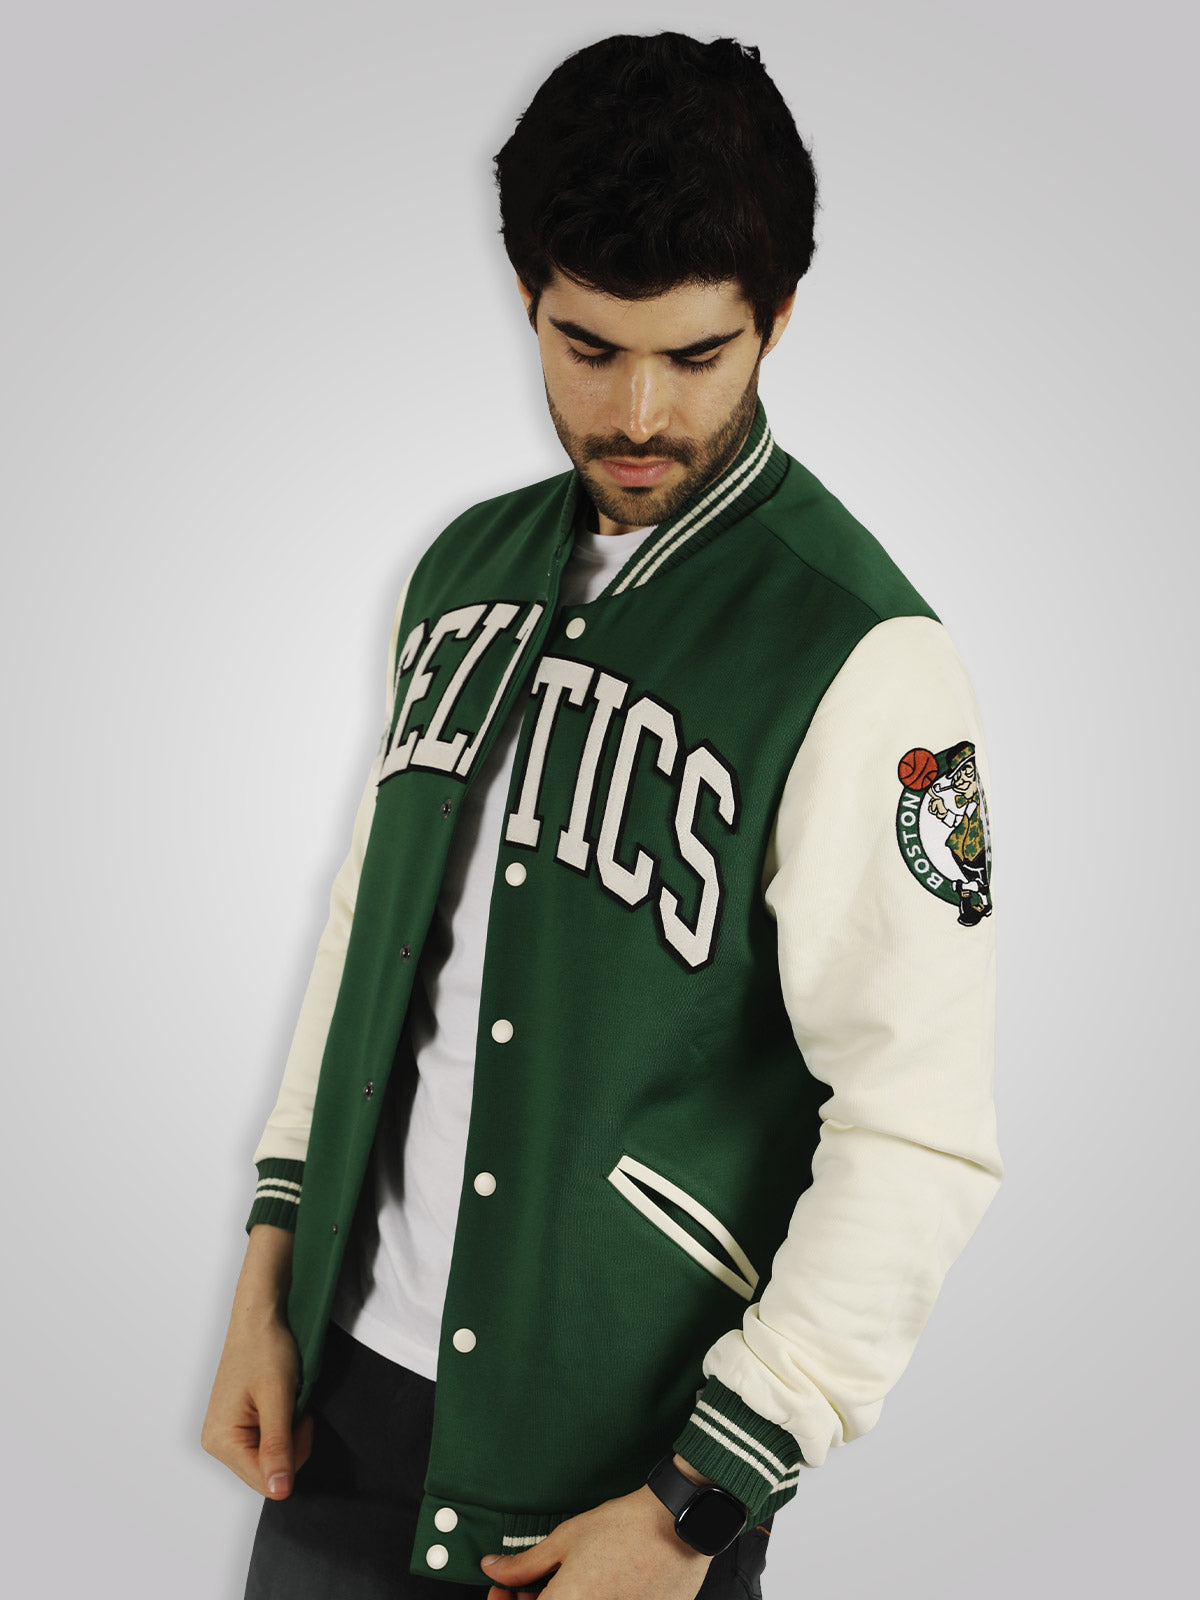 Boston Celtics NBA Block leather jacket • Kybershop